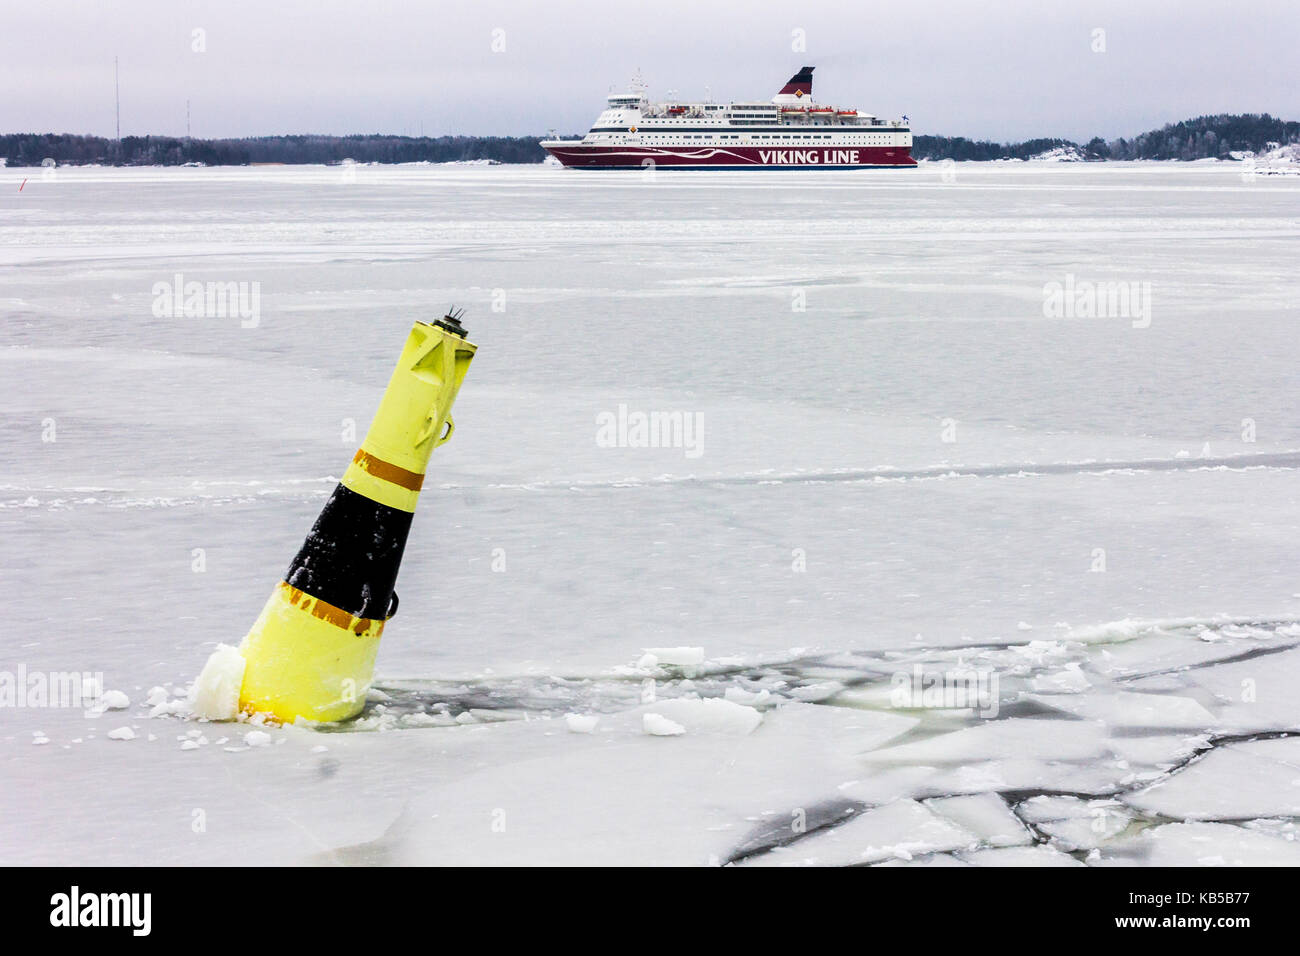 Un mare a filamento di boa sulle acque congelate di Suomenlinna, Helsinki, Finlandia, con una linea di viking ship in background Foto Stock